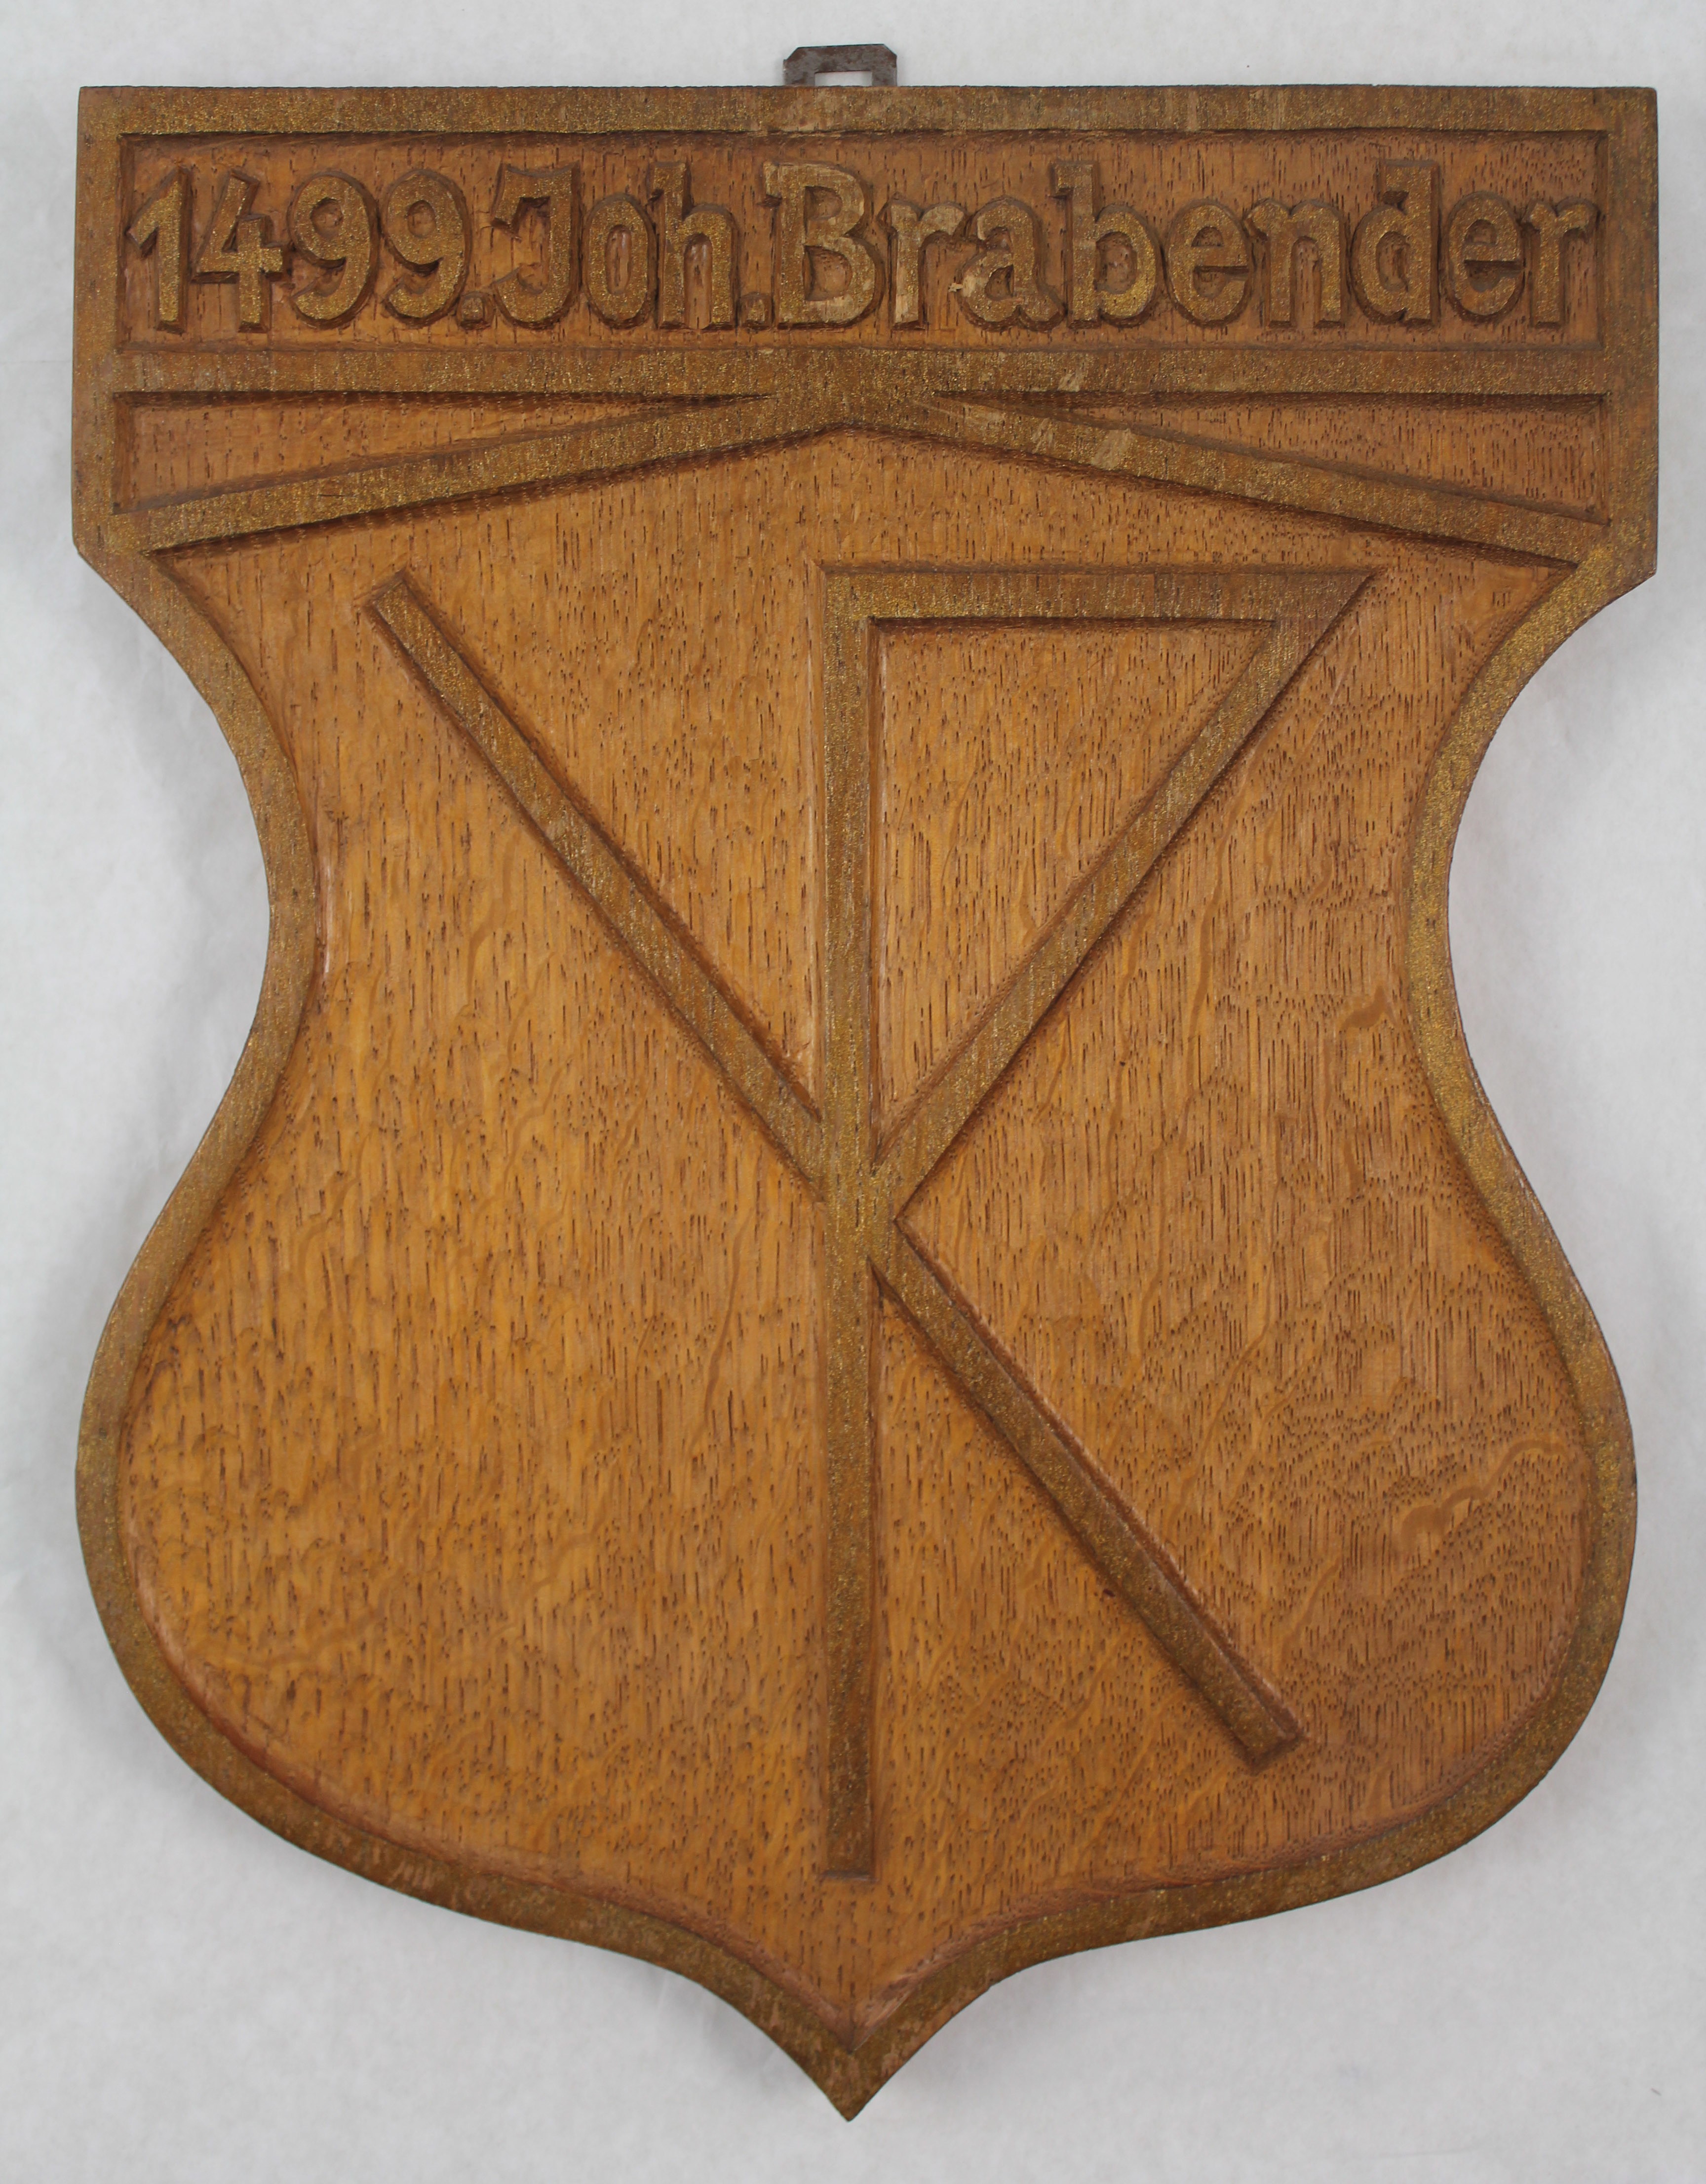 Wappenschild & Hölzernes Wappen mit Hausmarke, Joh. Brabender 1499 (Hellweg-Museum Unna CC BY-NC-SA)